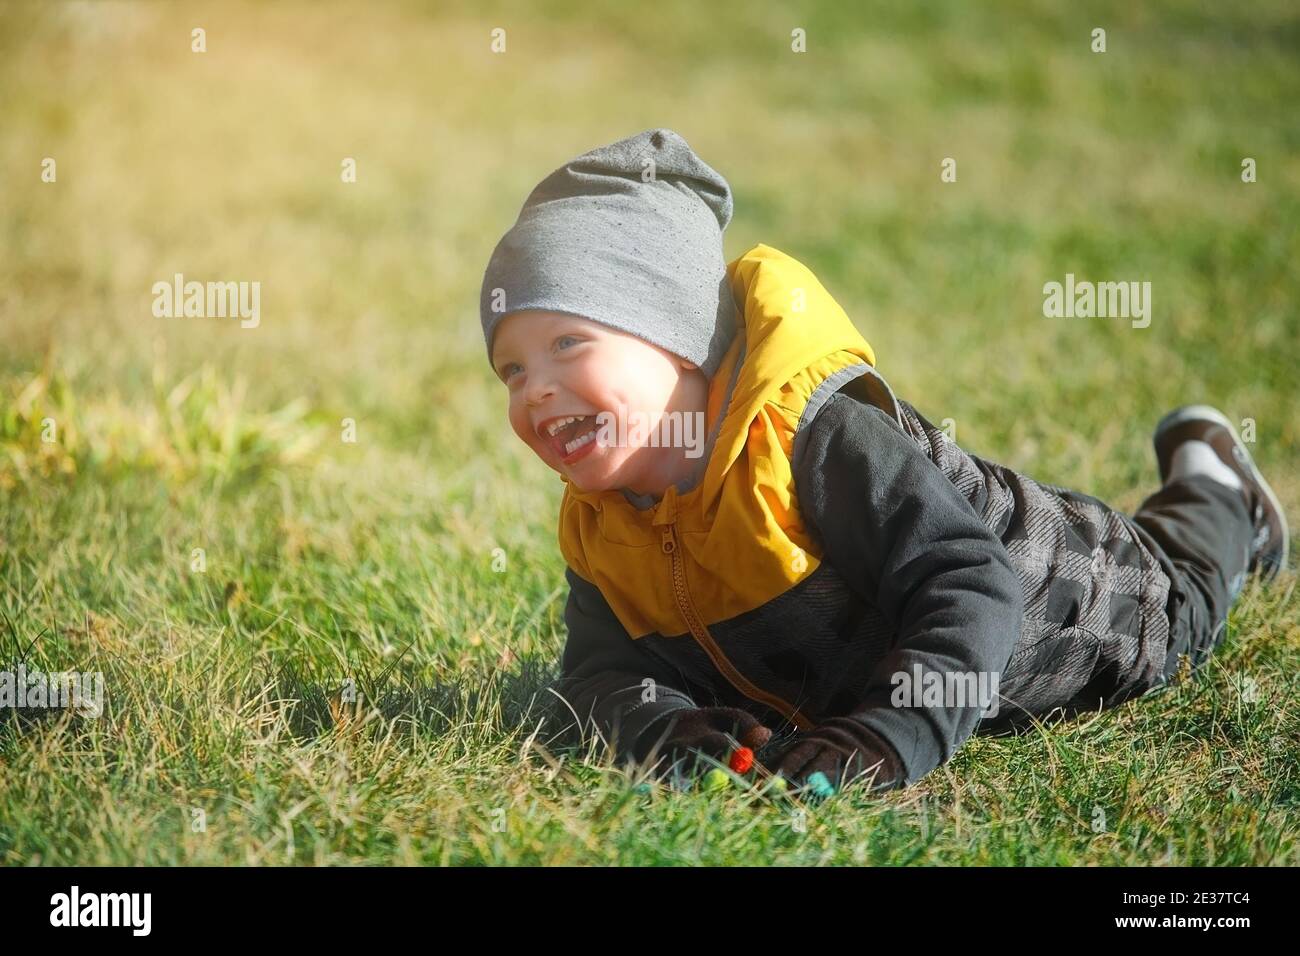 Emotionales Porträt eines kaukasischen Jungen in einem Herbstpark auf einem Spaziergang. Stockfoto